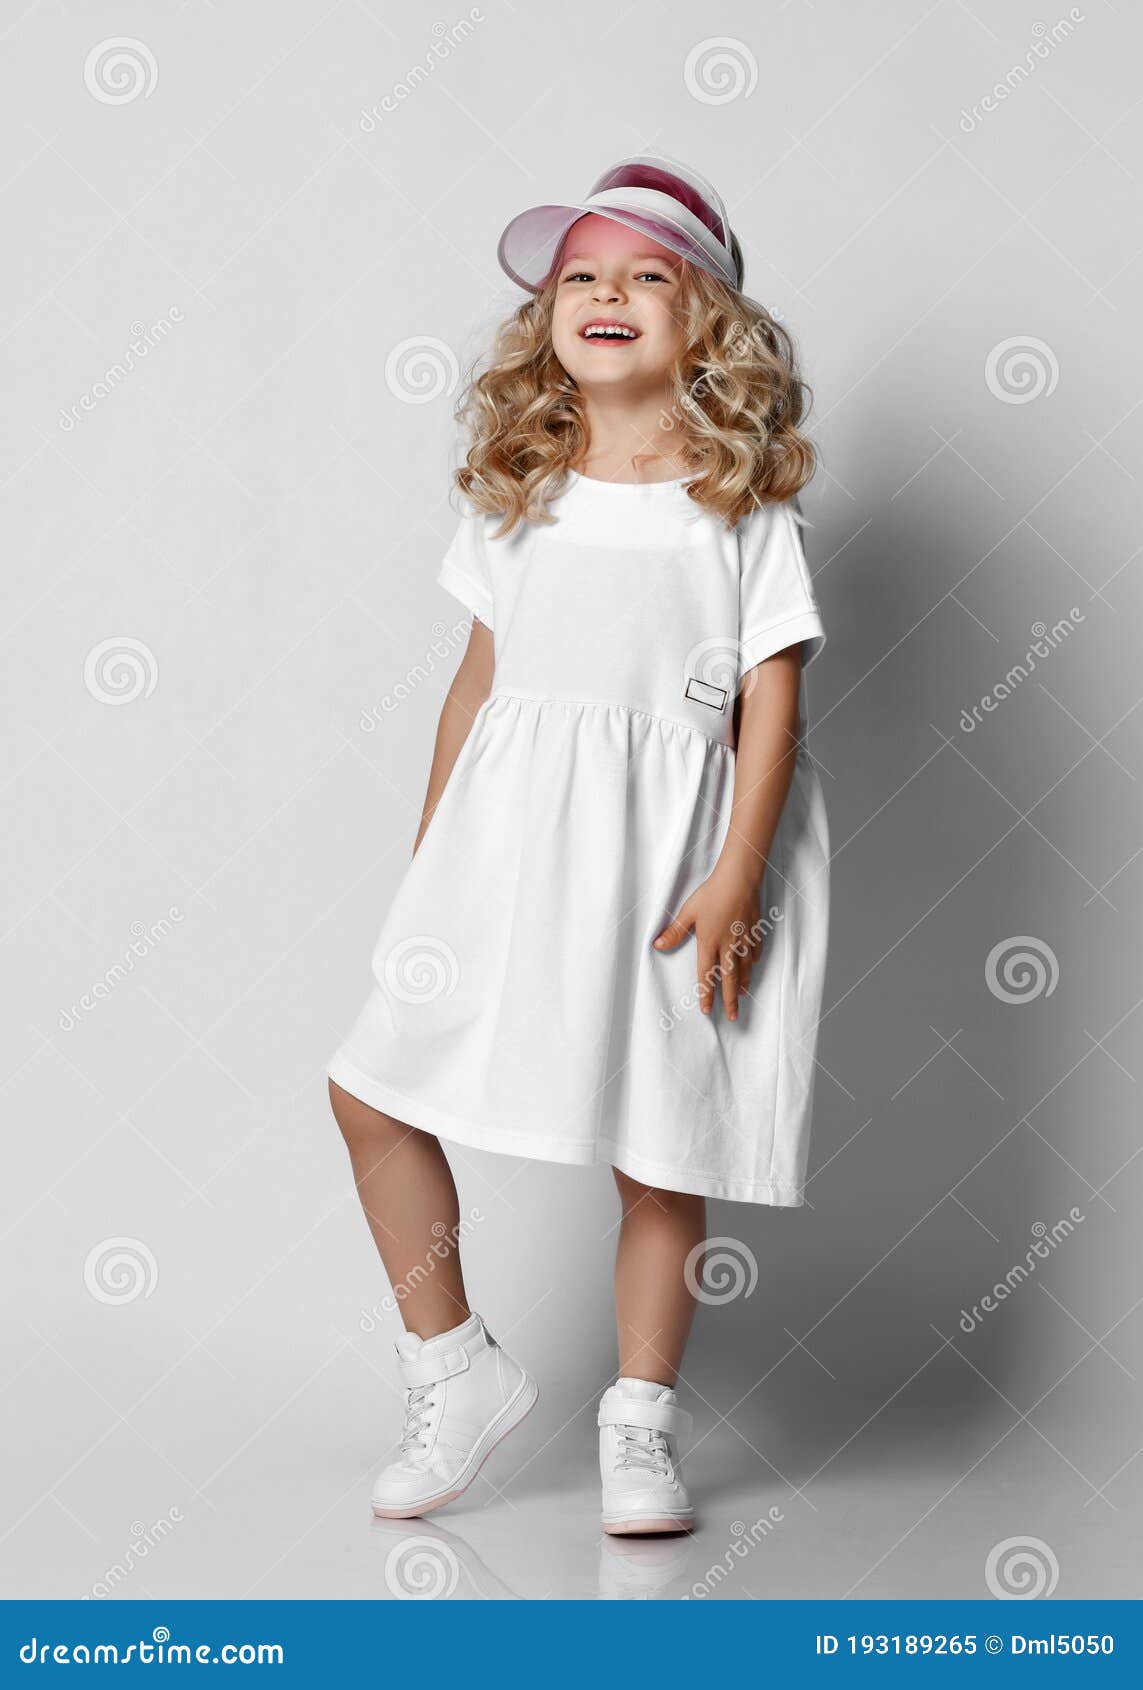 De Niña Rubia Rubia Y Rizada Con Vestido Blanco Casual Y Zapatillas De Tenis Pie Sobre Una Pared Gris Imagen de archivo - Imagen de peinado, feliz: 193189265